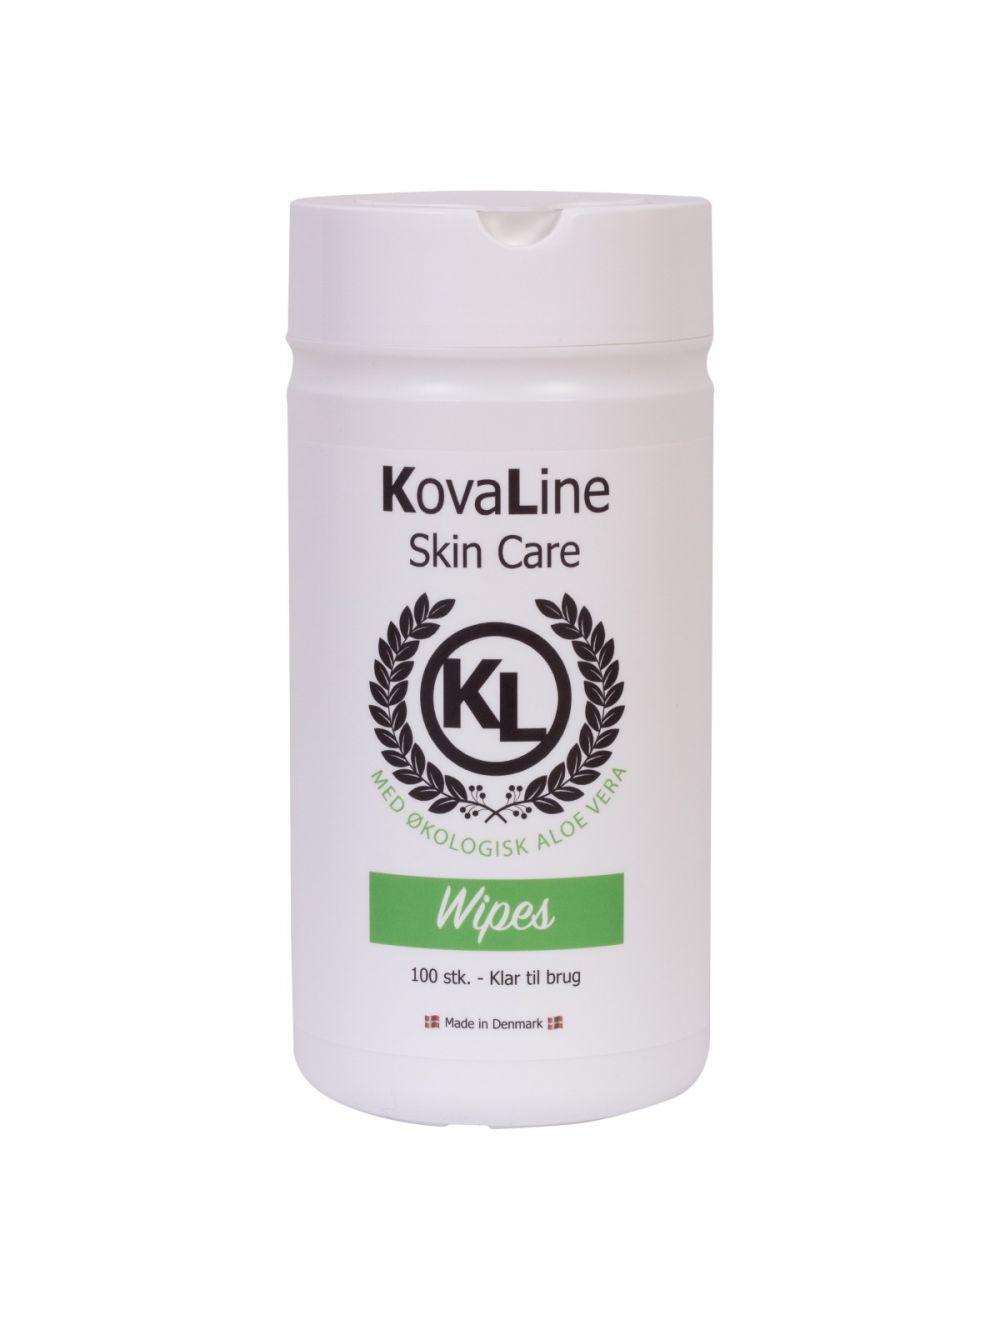 KovaLine - Ready to use Wipes - Aloe vera - 100pcs - (571326000021), Kovaline